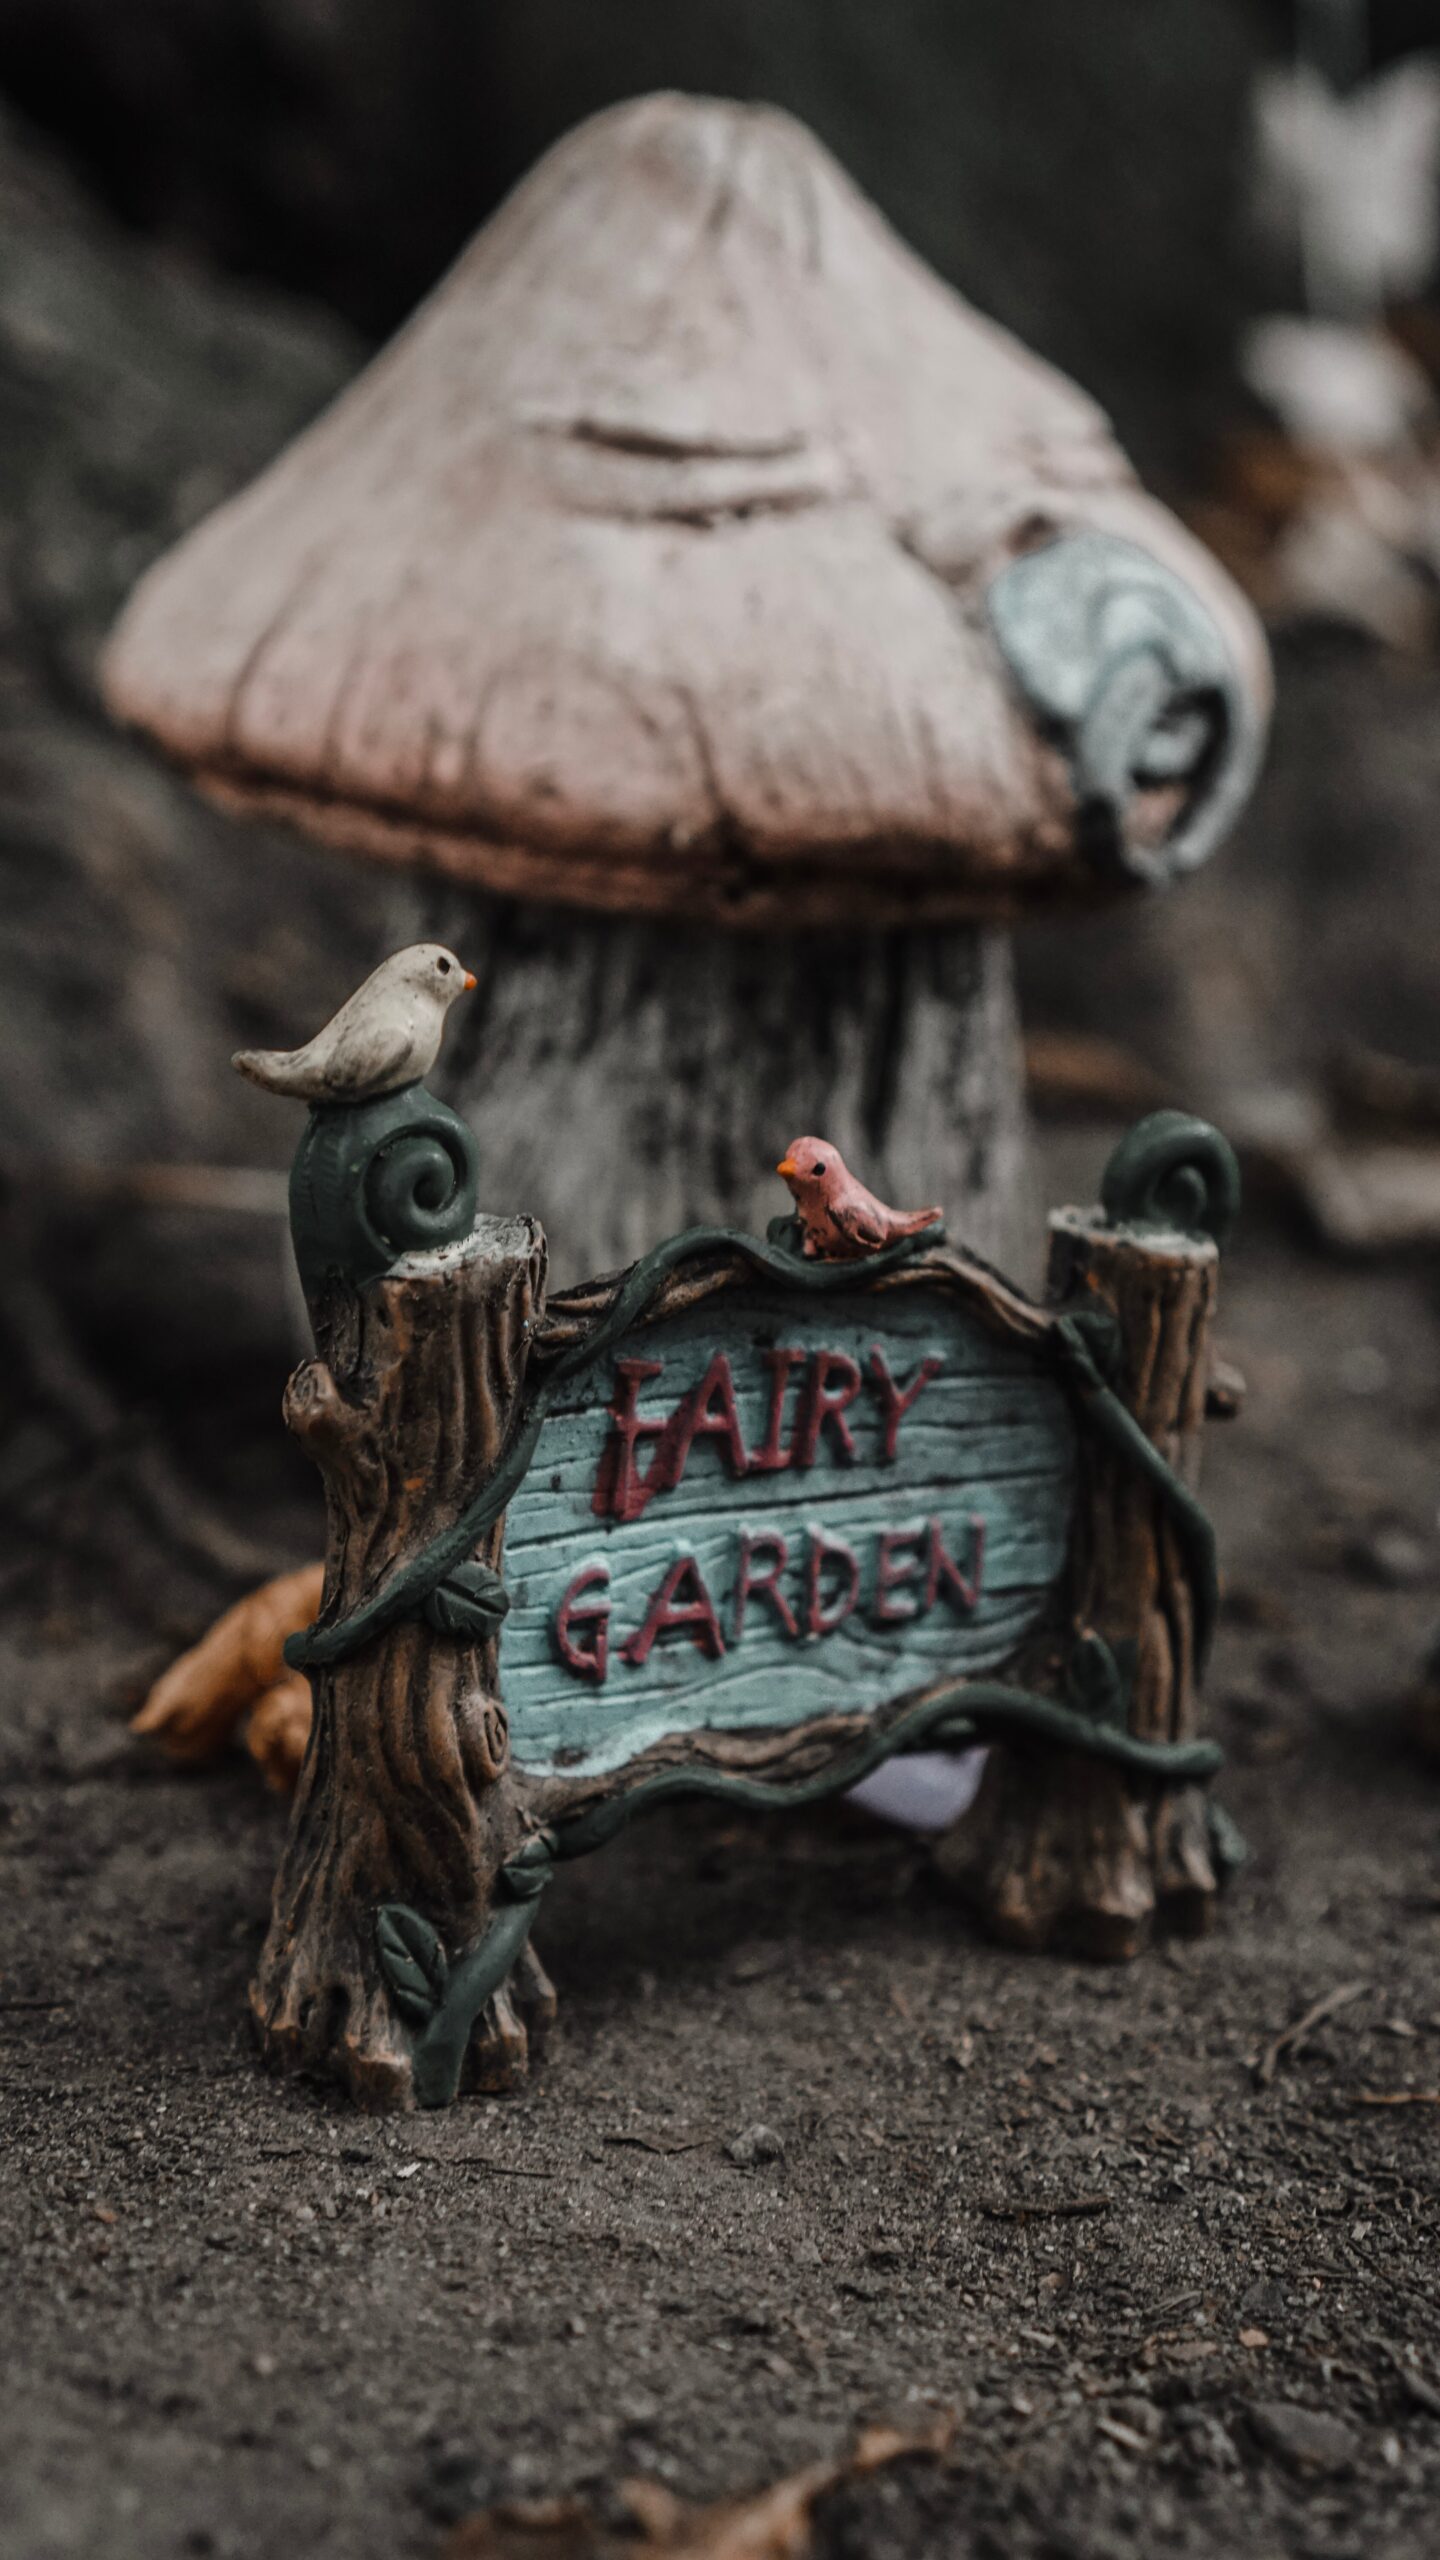 Fairy garden | 